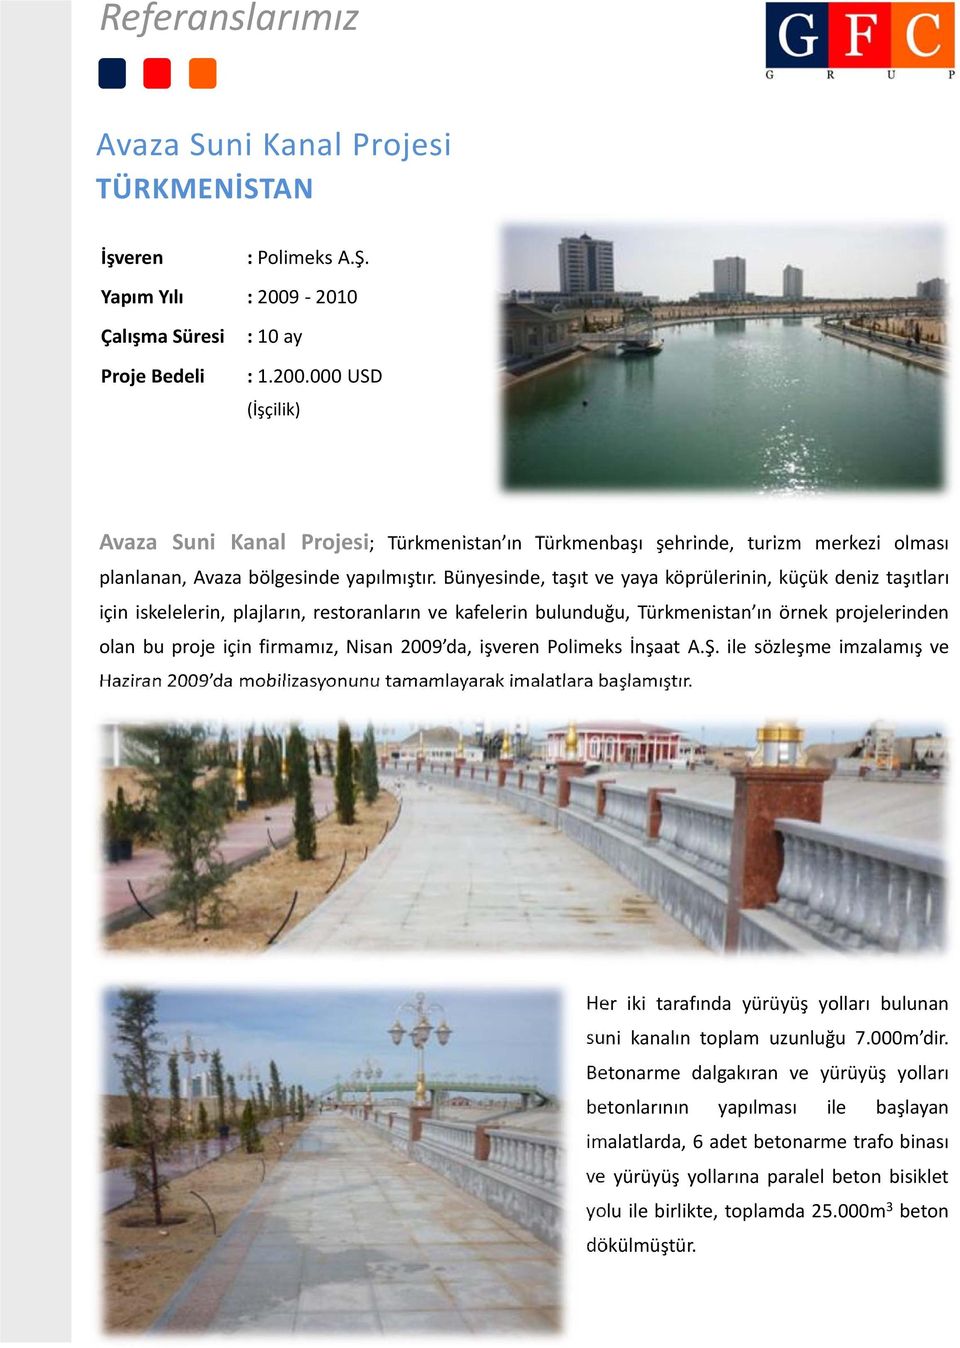 Bünyesinde, taşıt ve yaya köprülerinin, küçük deniz taşıtları için iskelelerin, plajların, restoranların ve kafelerin bulunduğu, Türkmenistan ın örnek projelerinden olan bu proje için firmamız, Nisan